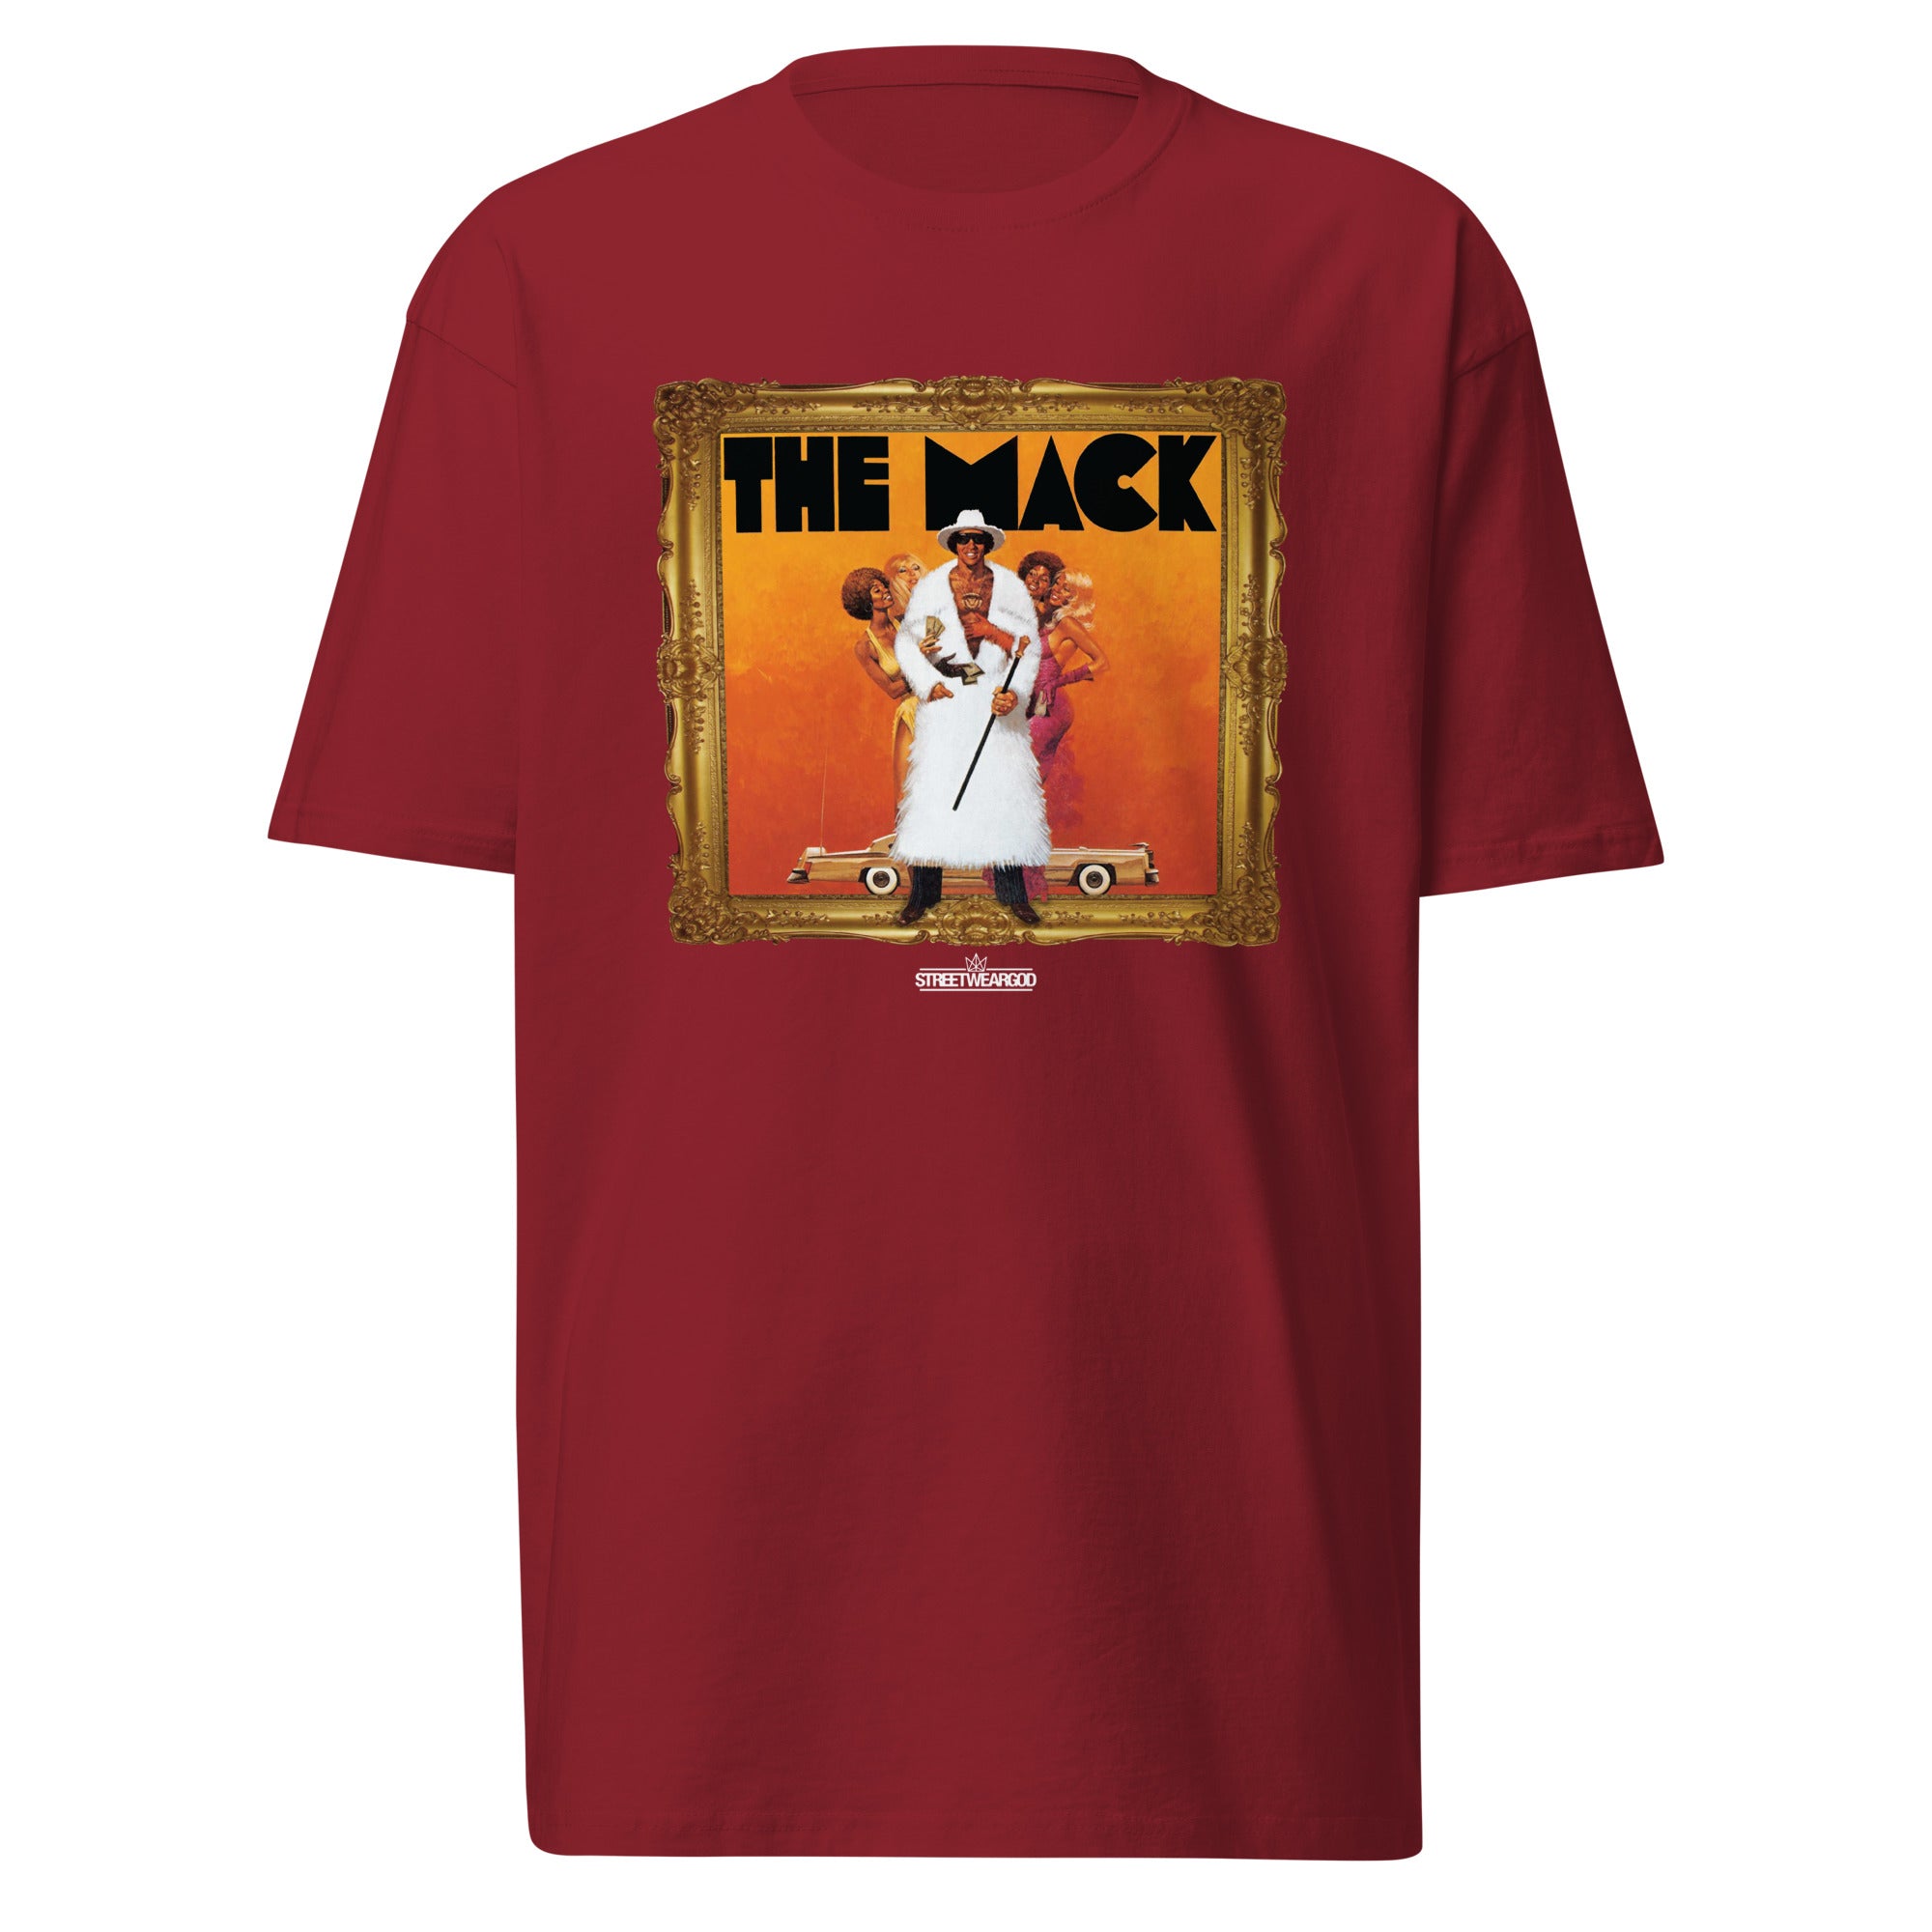 Mack brick premium heavyweight tee